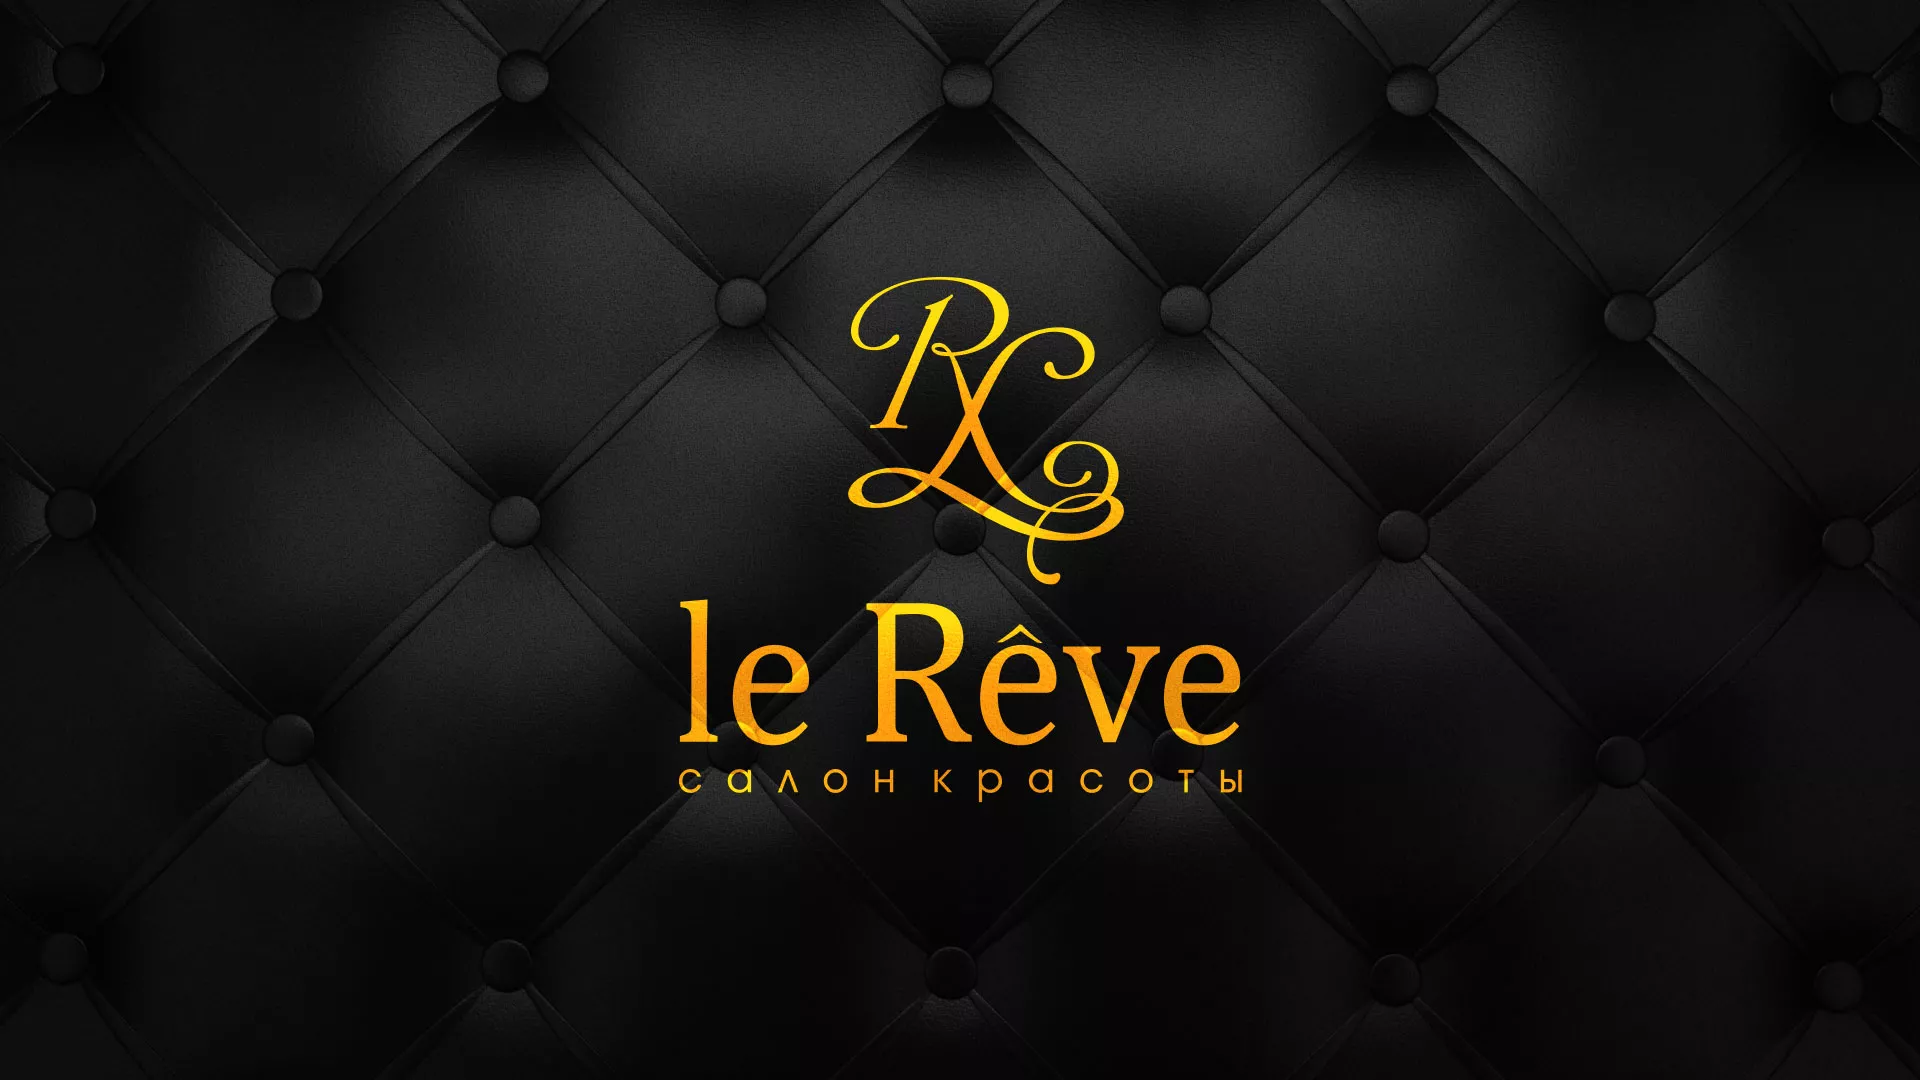 Разработка листовок для салона красоты «Le Reve» в Орехово-Зуево